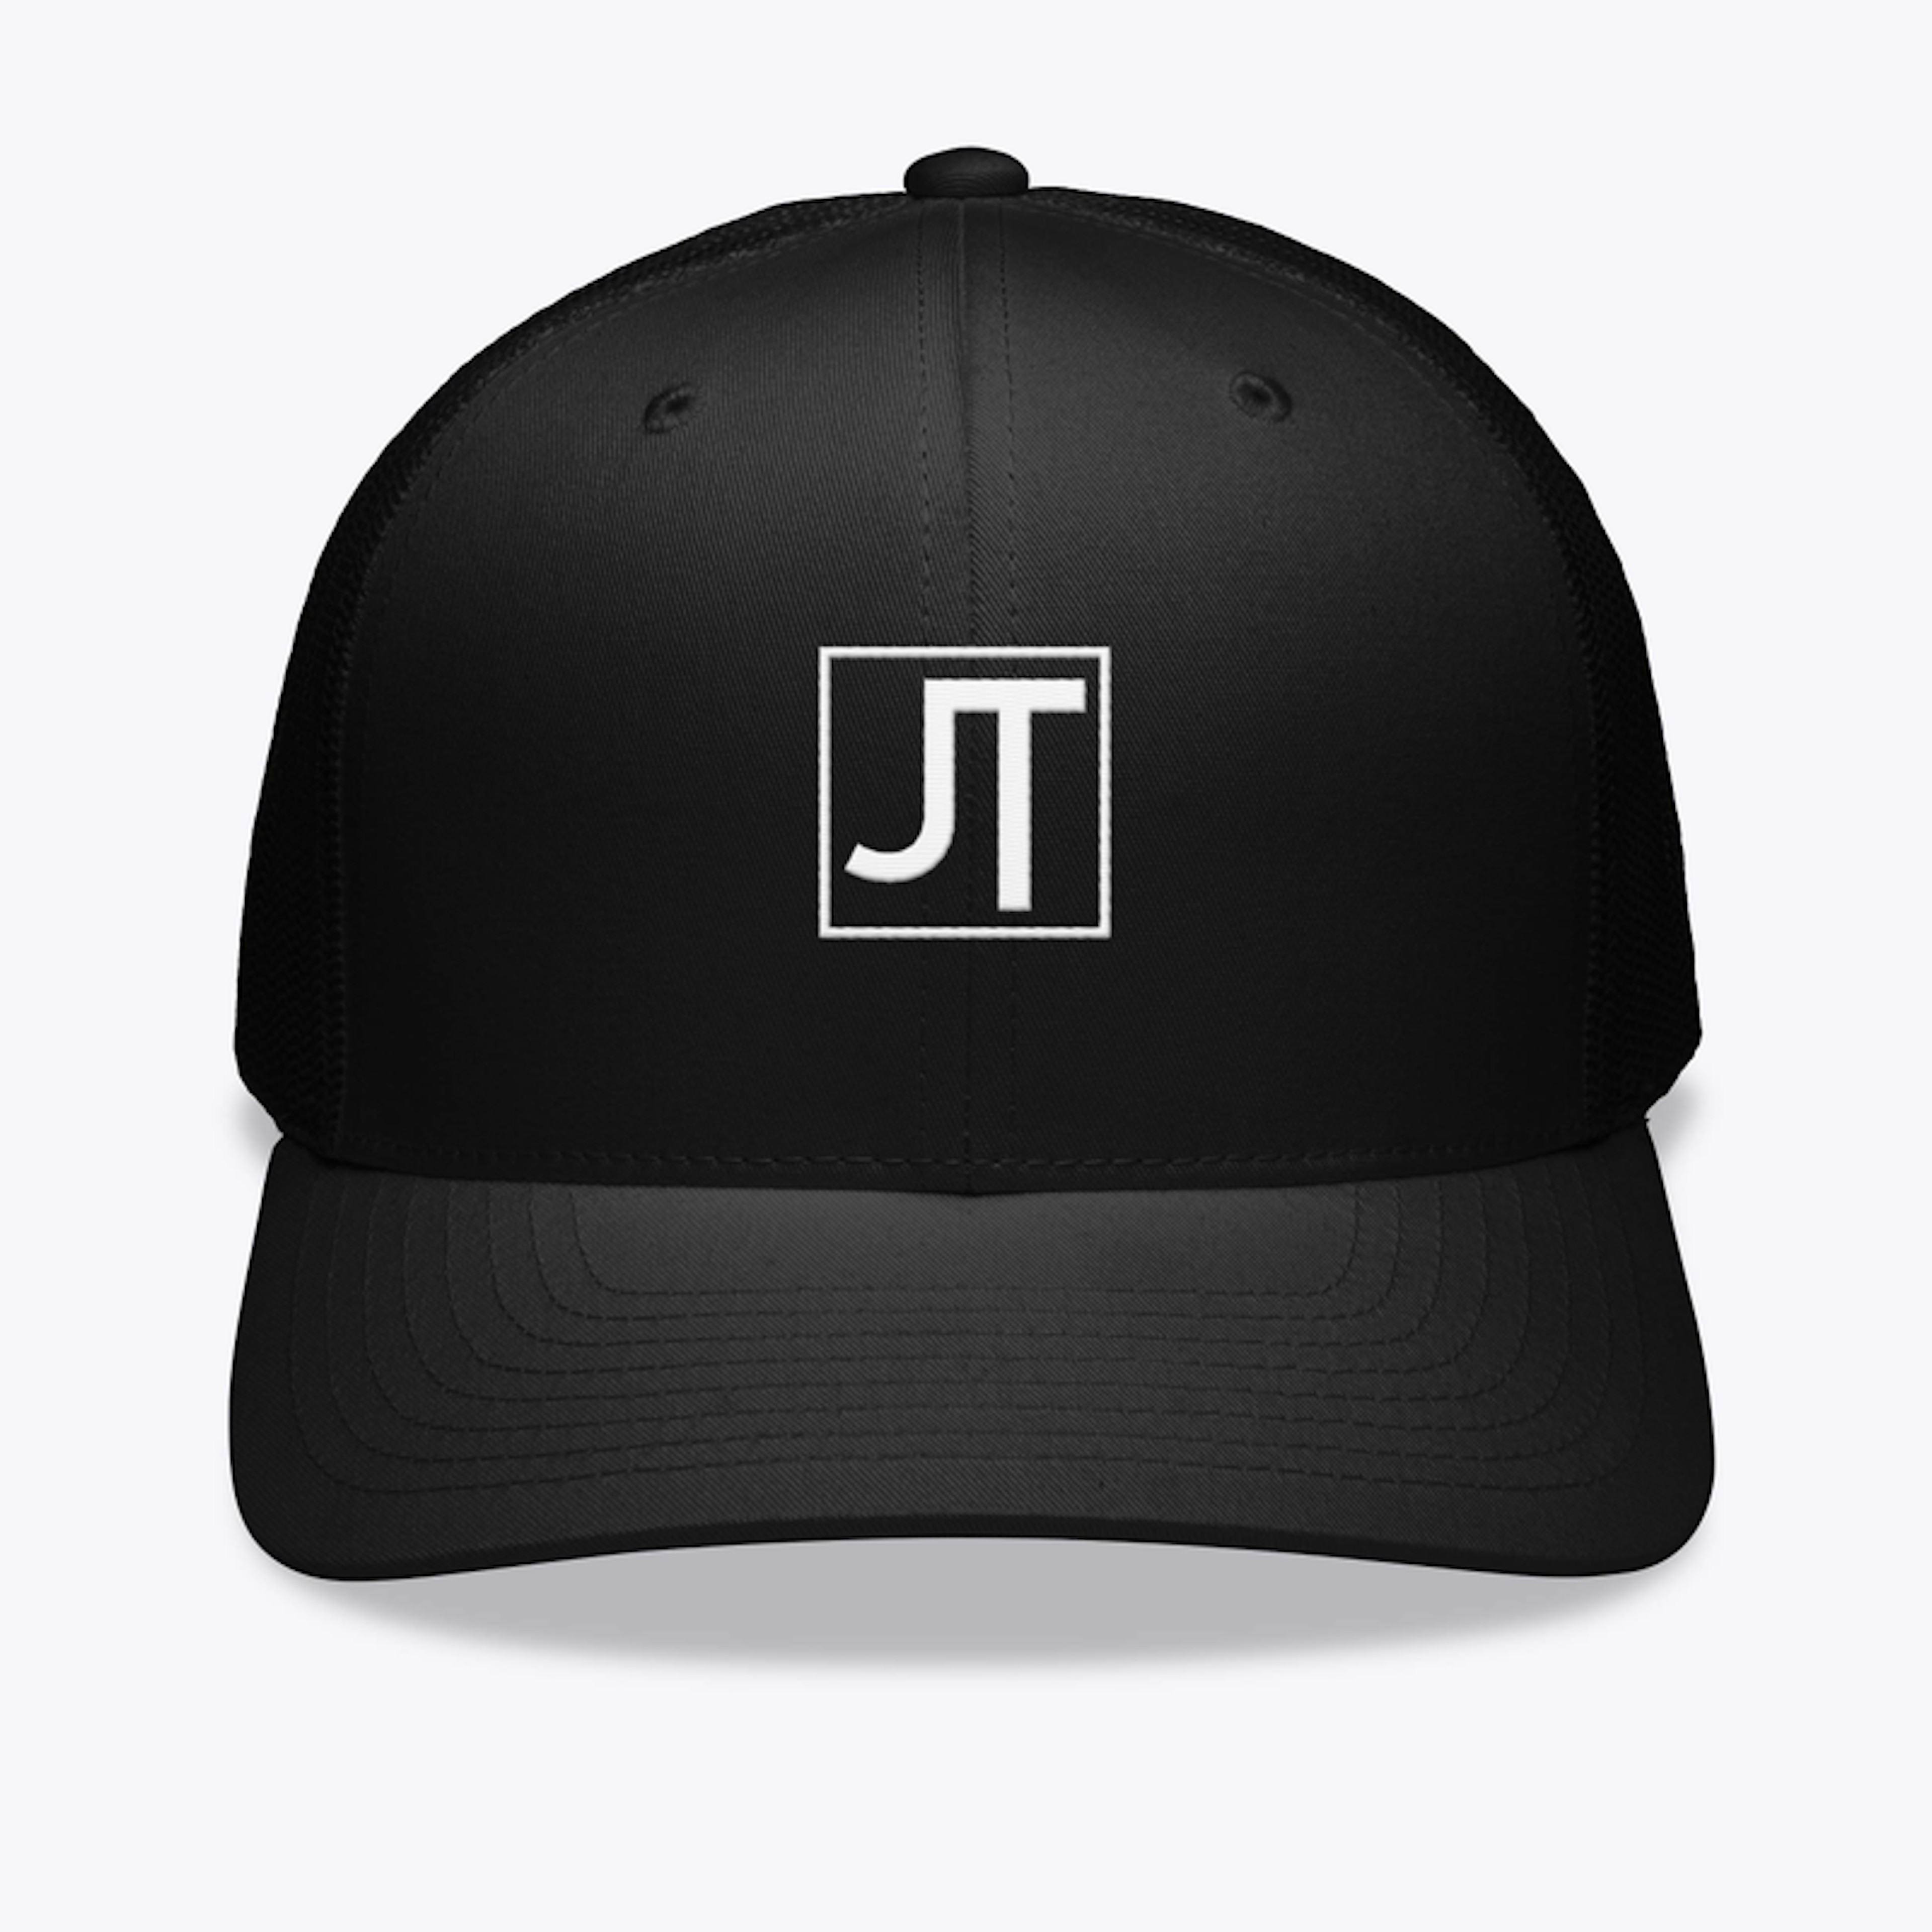 JT Hats